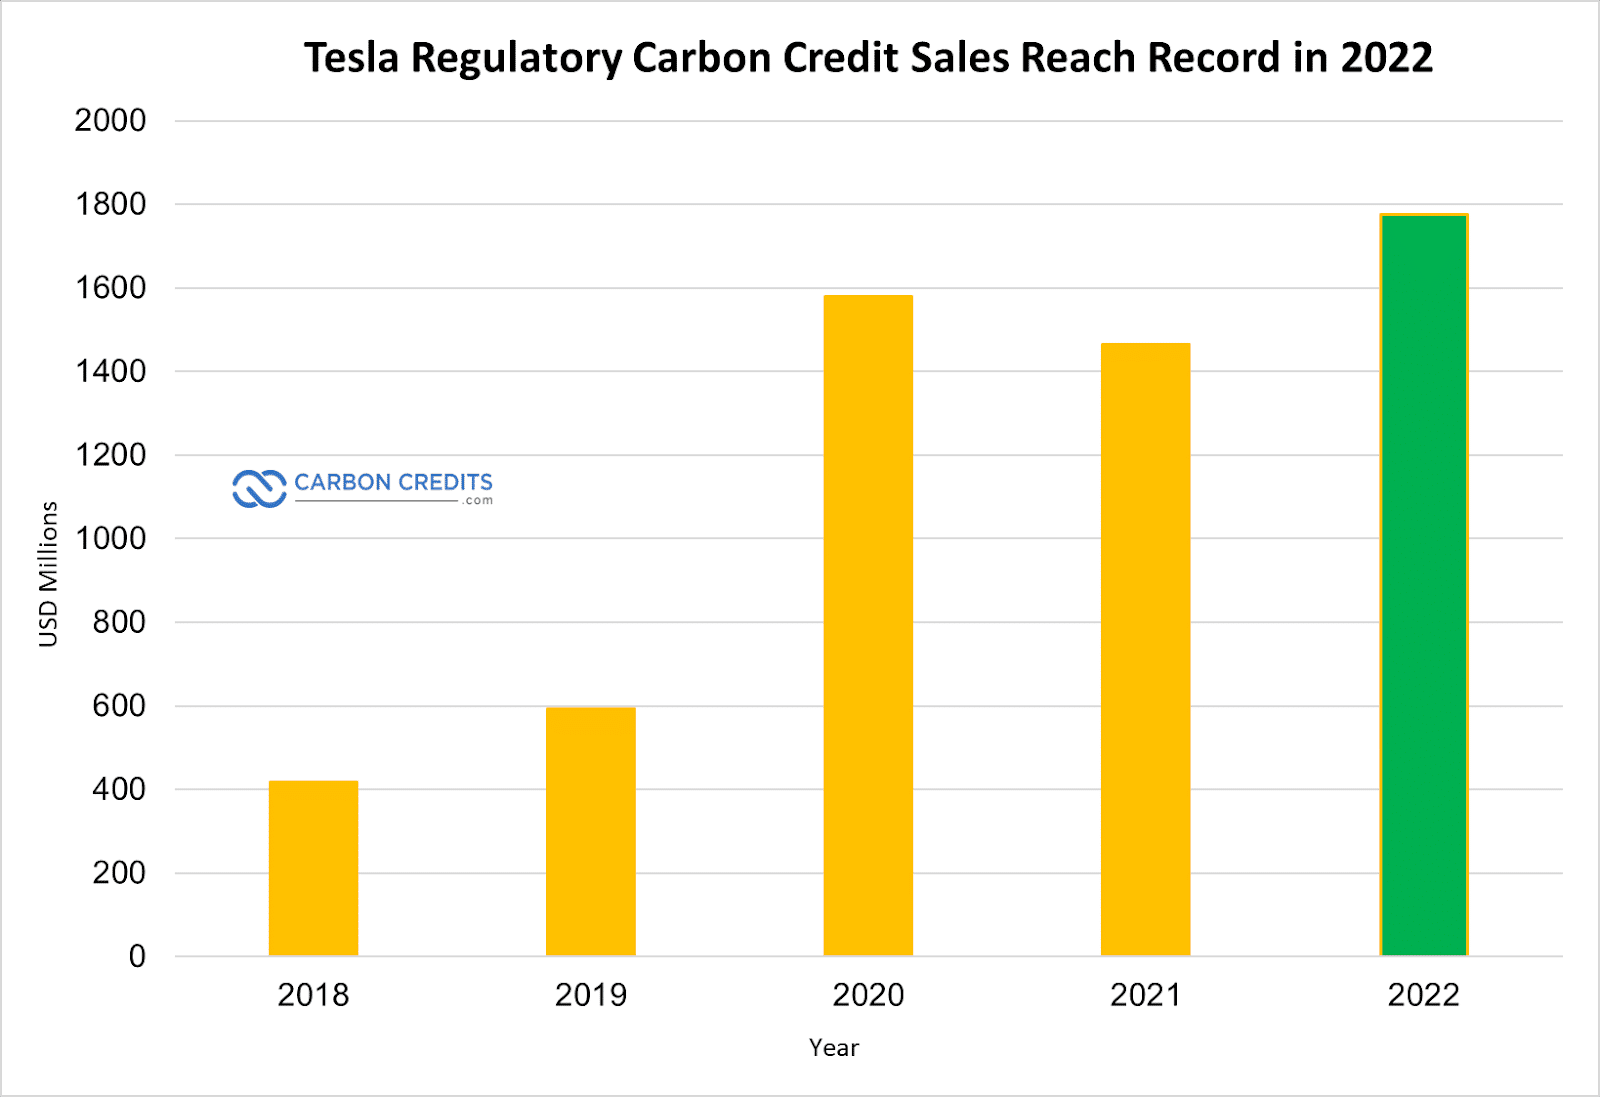 A Tesla szén-dioxid-hitel-értékesítési rekordja elérte az 1.78 milliárd dollárt 2022-ben